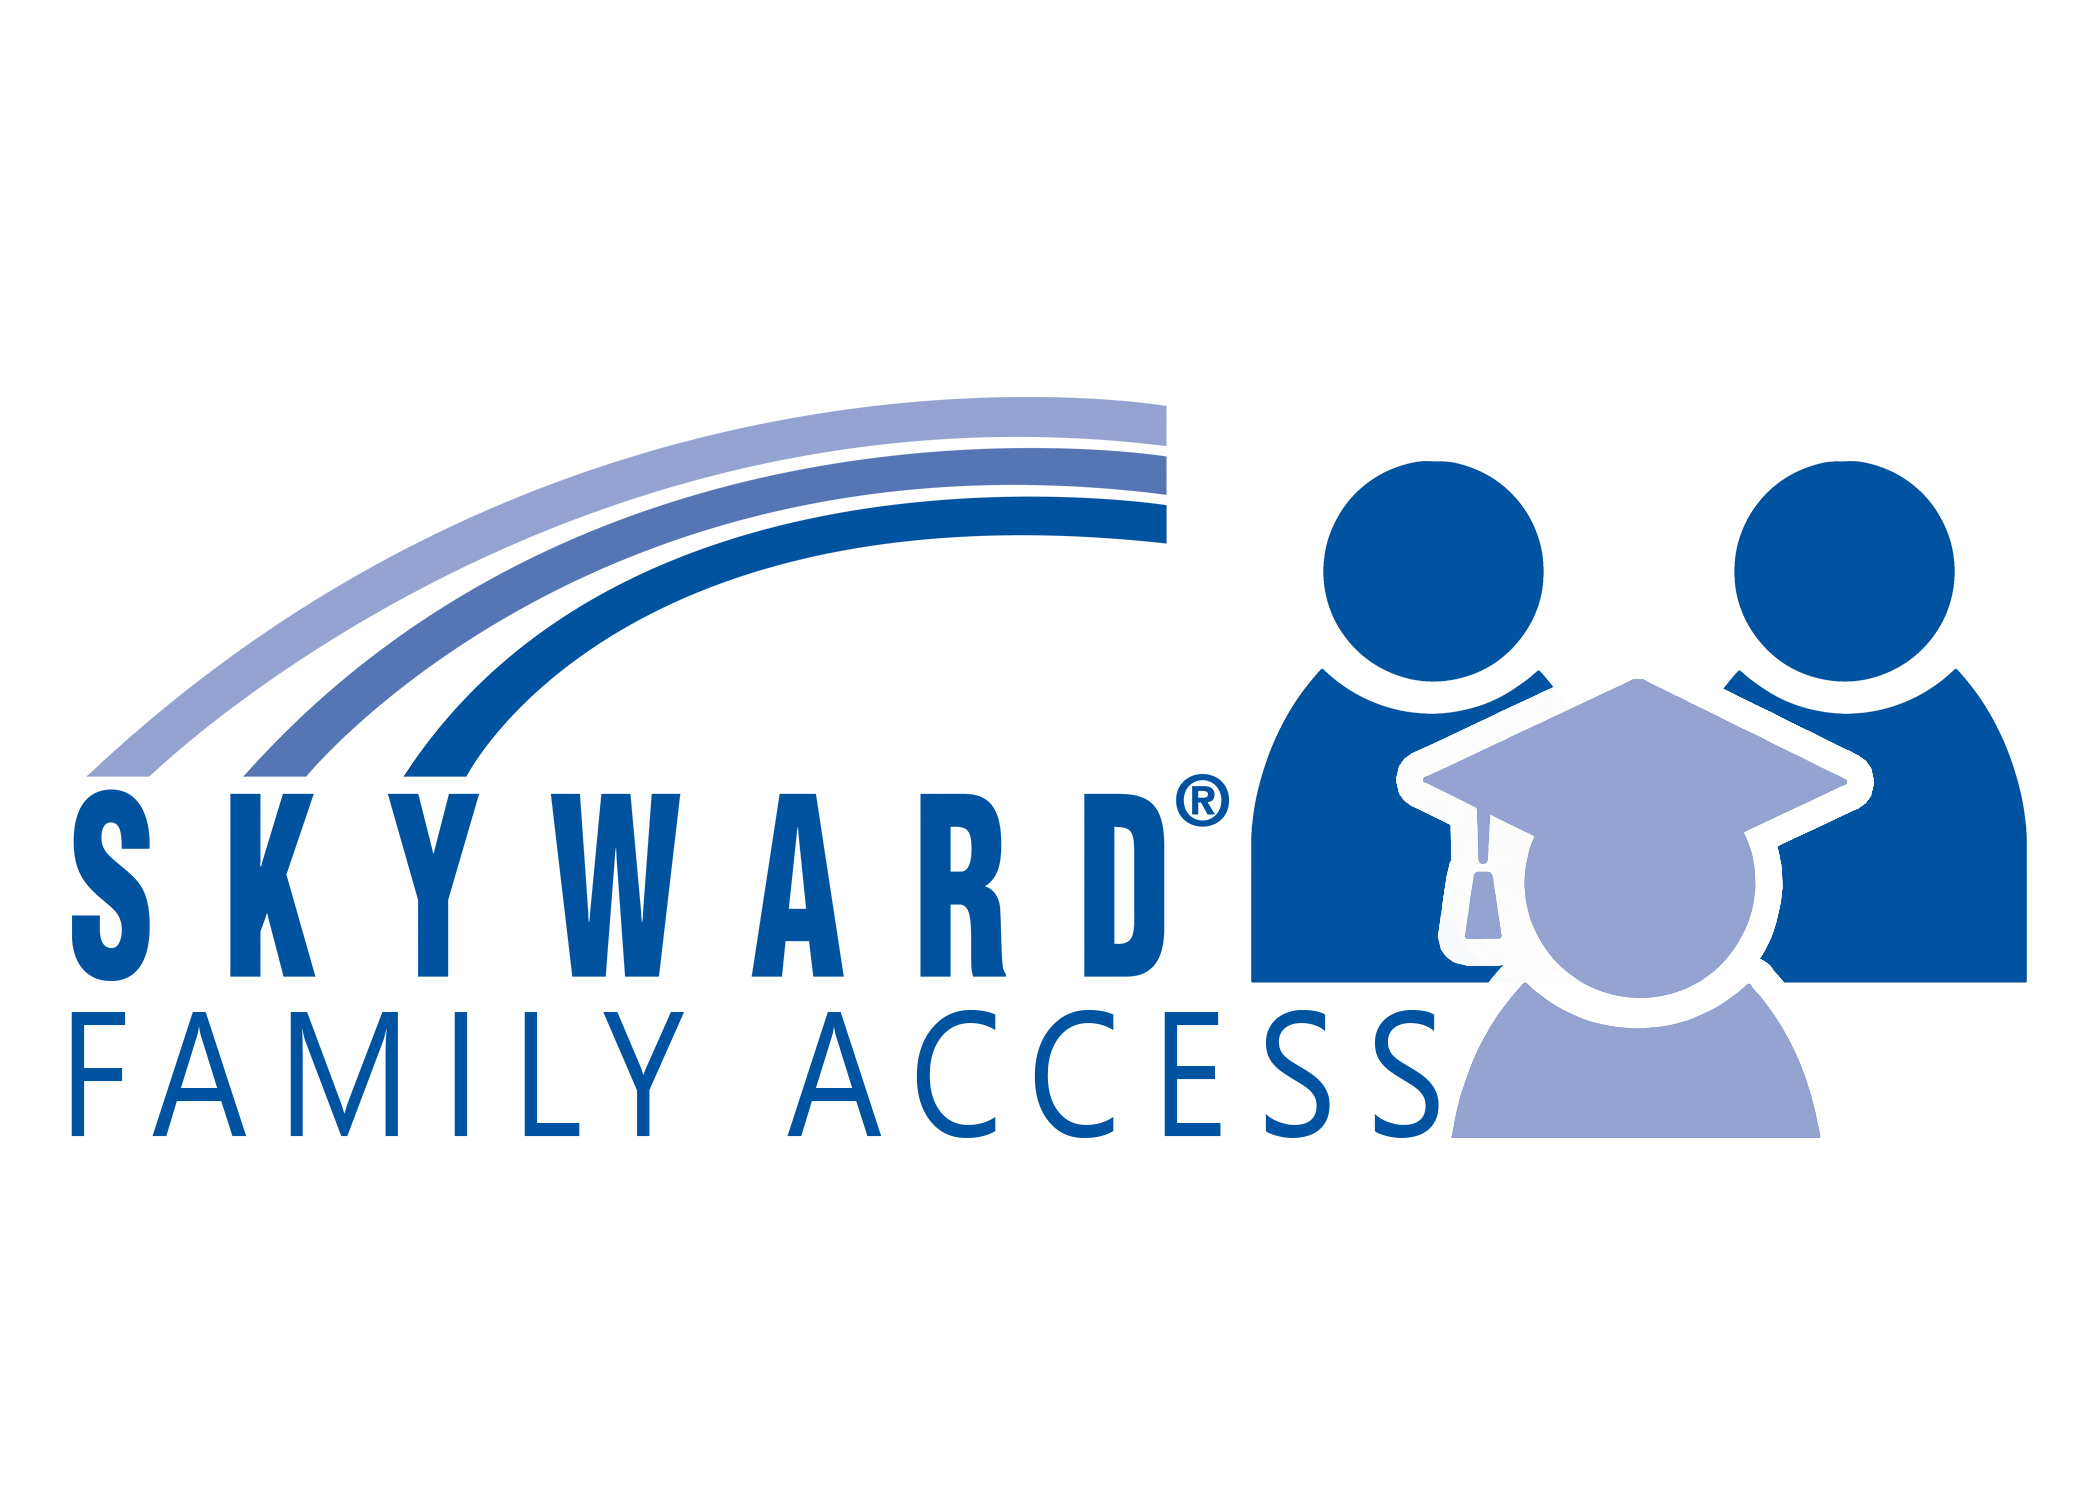 Skyward Logo - Family Access High Resolution Logo